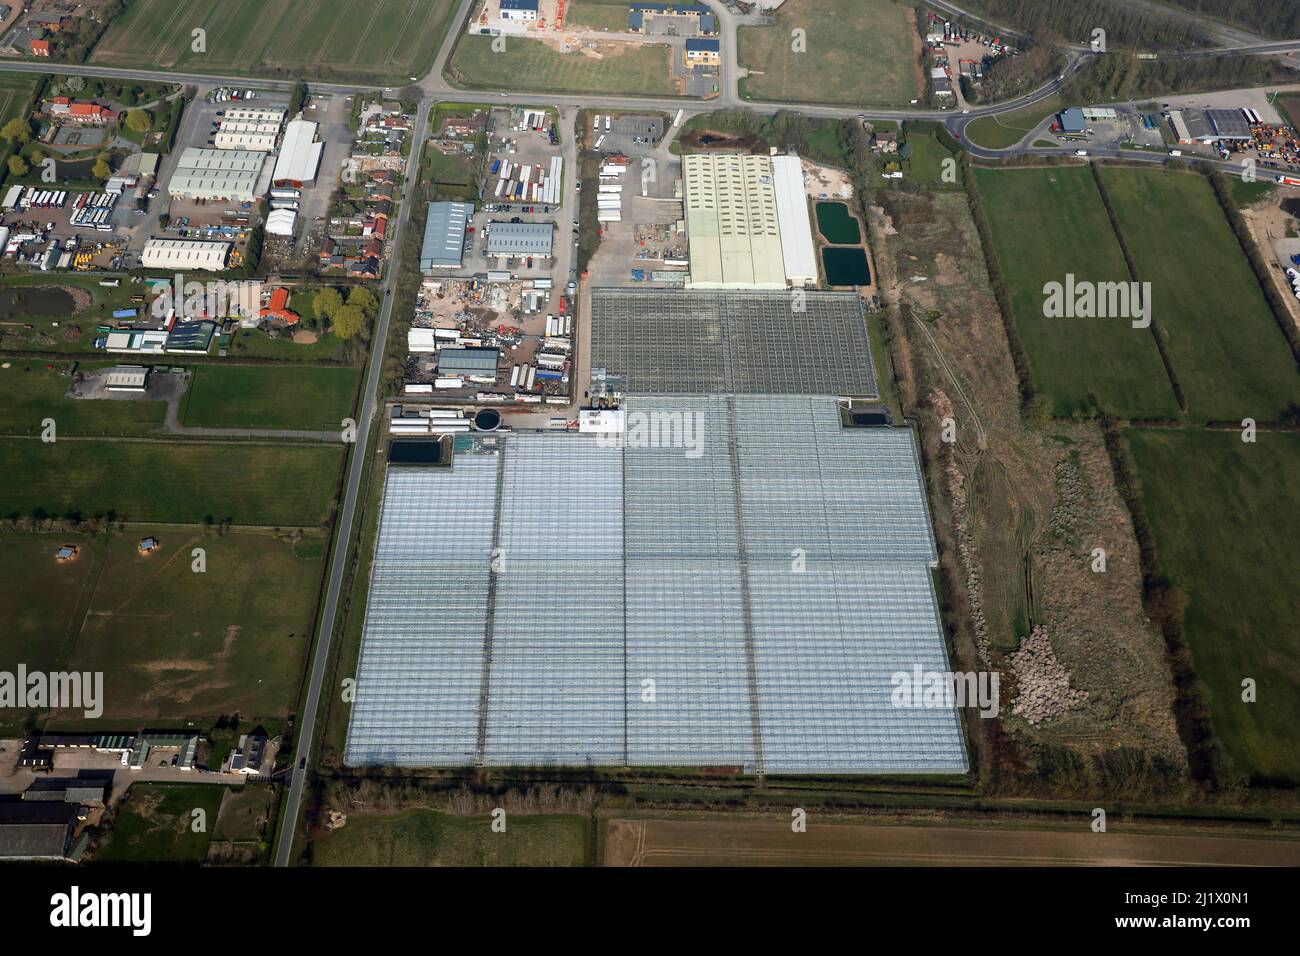 Vista aérea de los invernaderos comerciales hortícolas de Yorkshire Grown Produce Limited, Newport, Brough, East Yorkshire Foto de stock